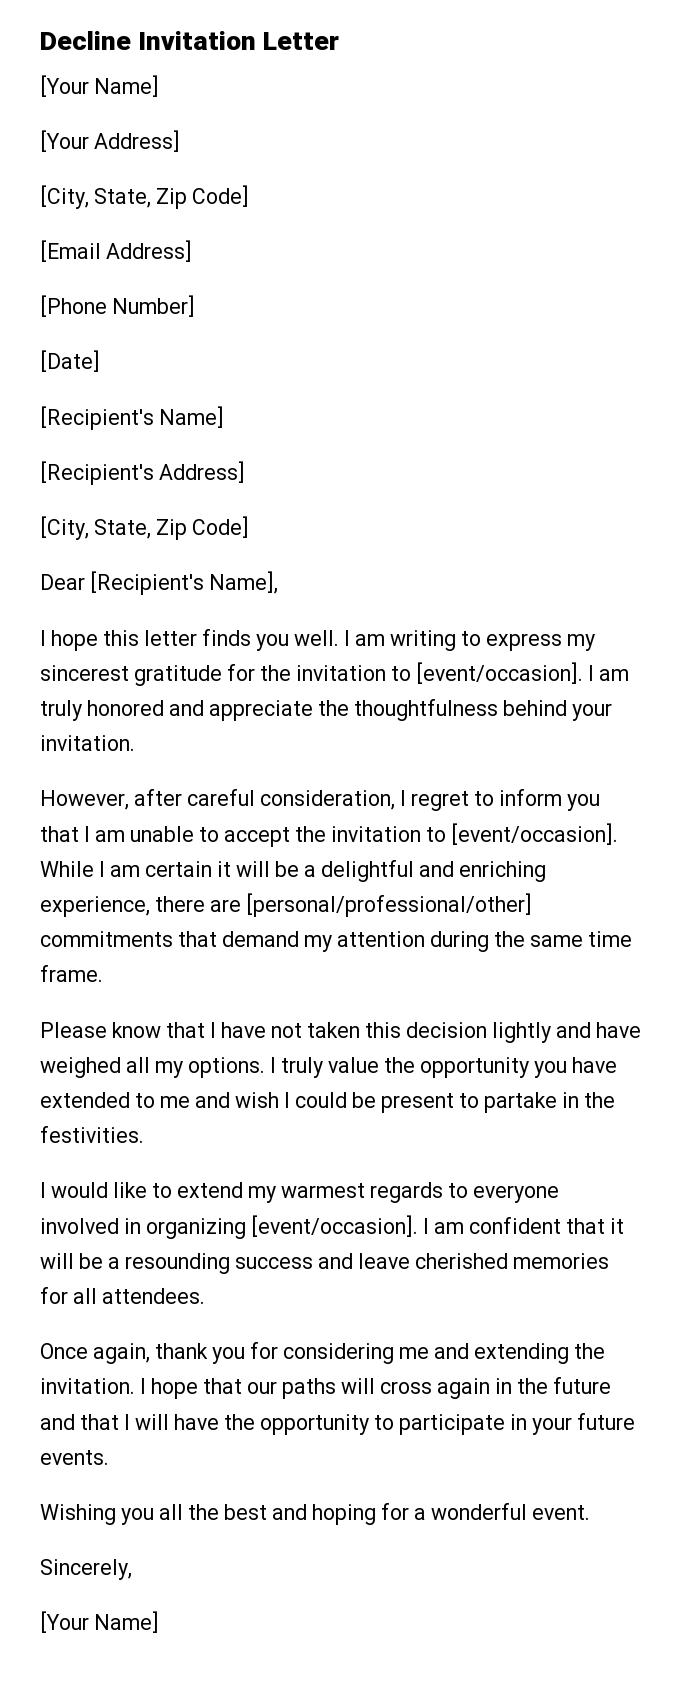 Decline Invitation Letter